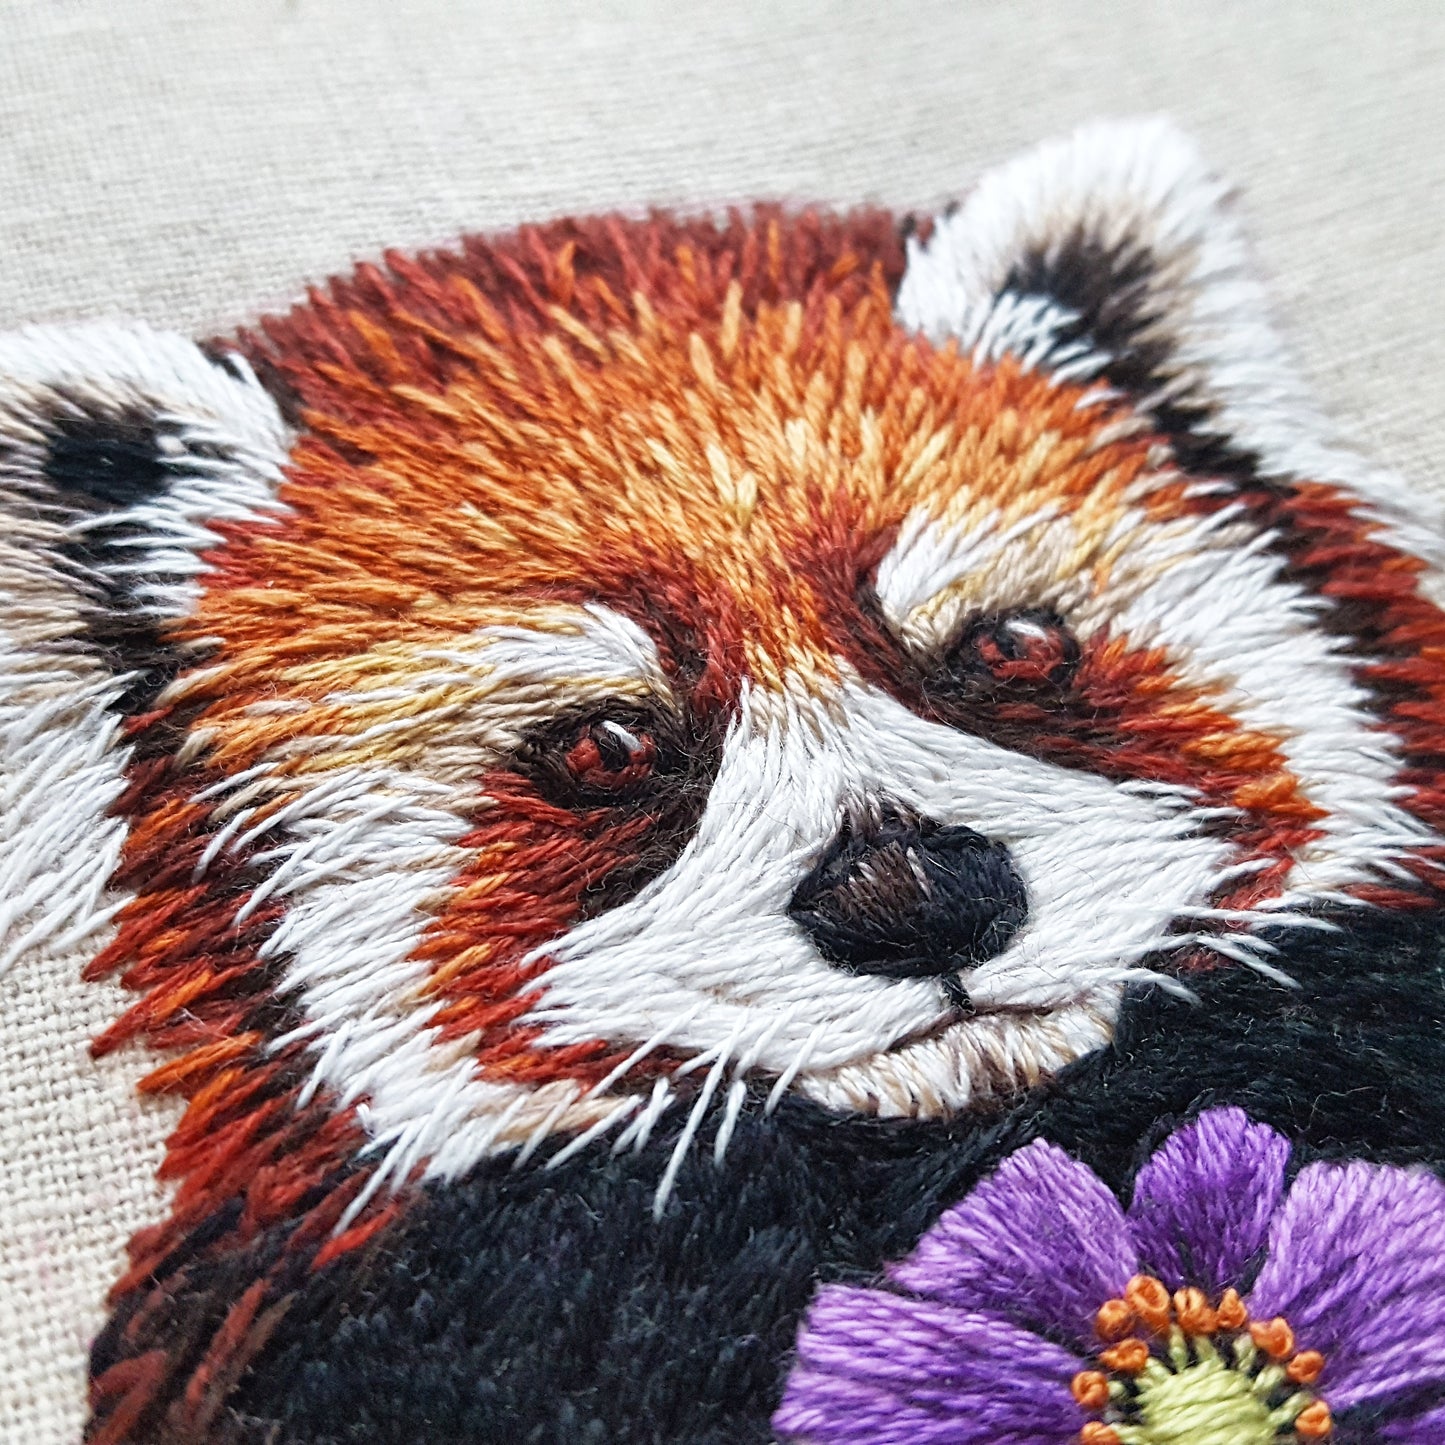 Red Panda Embroidery Pattern (PDF)